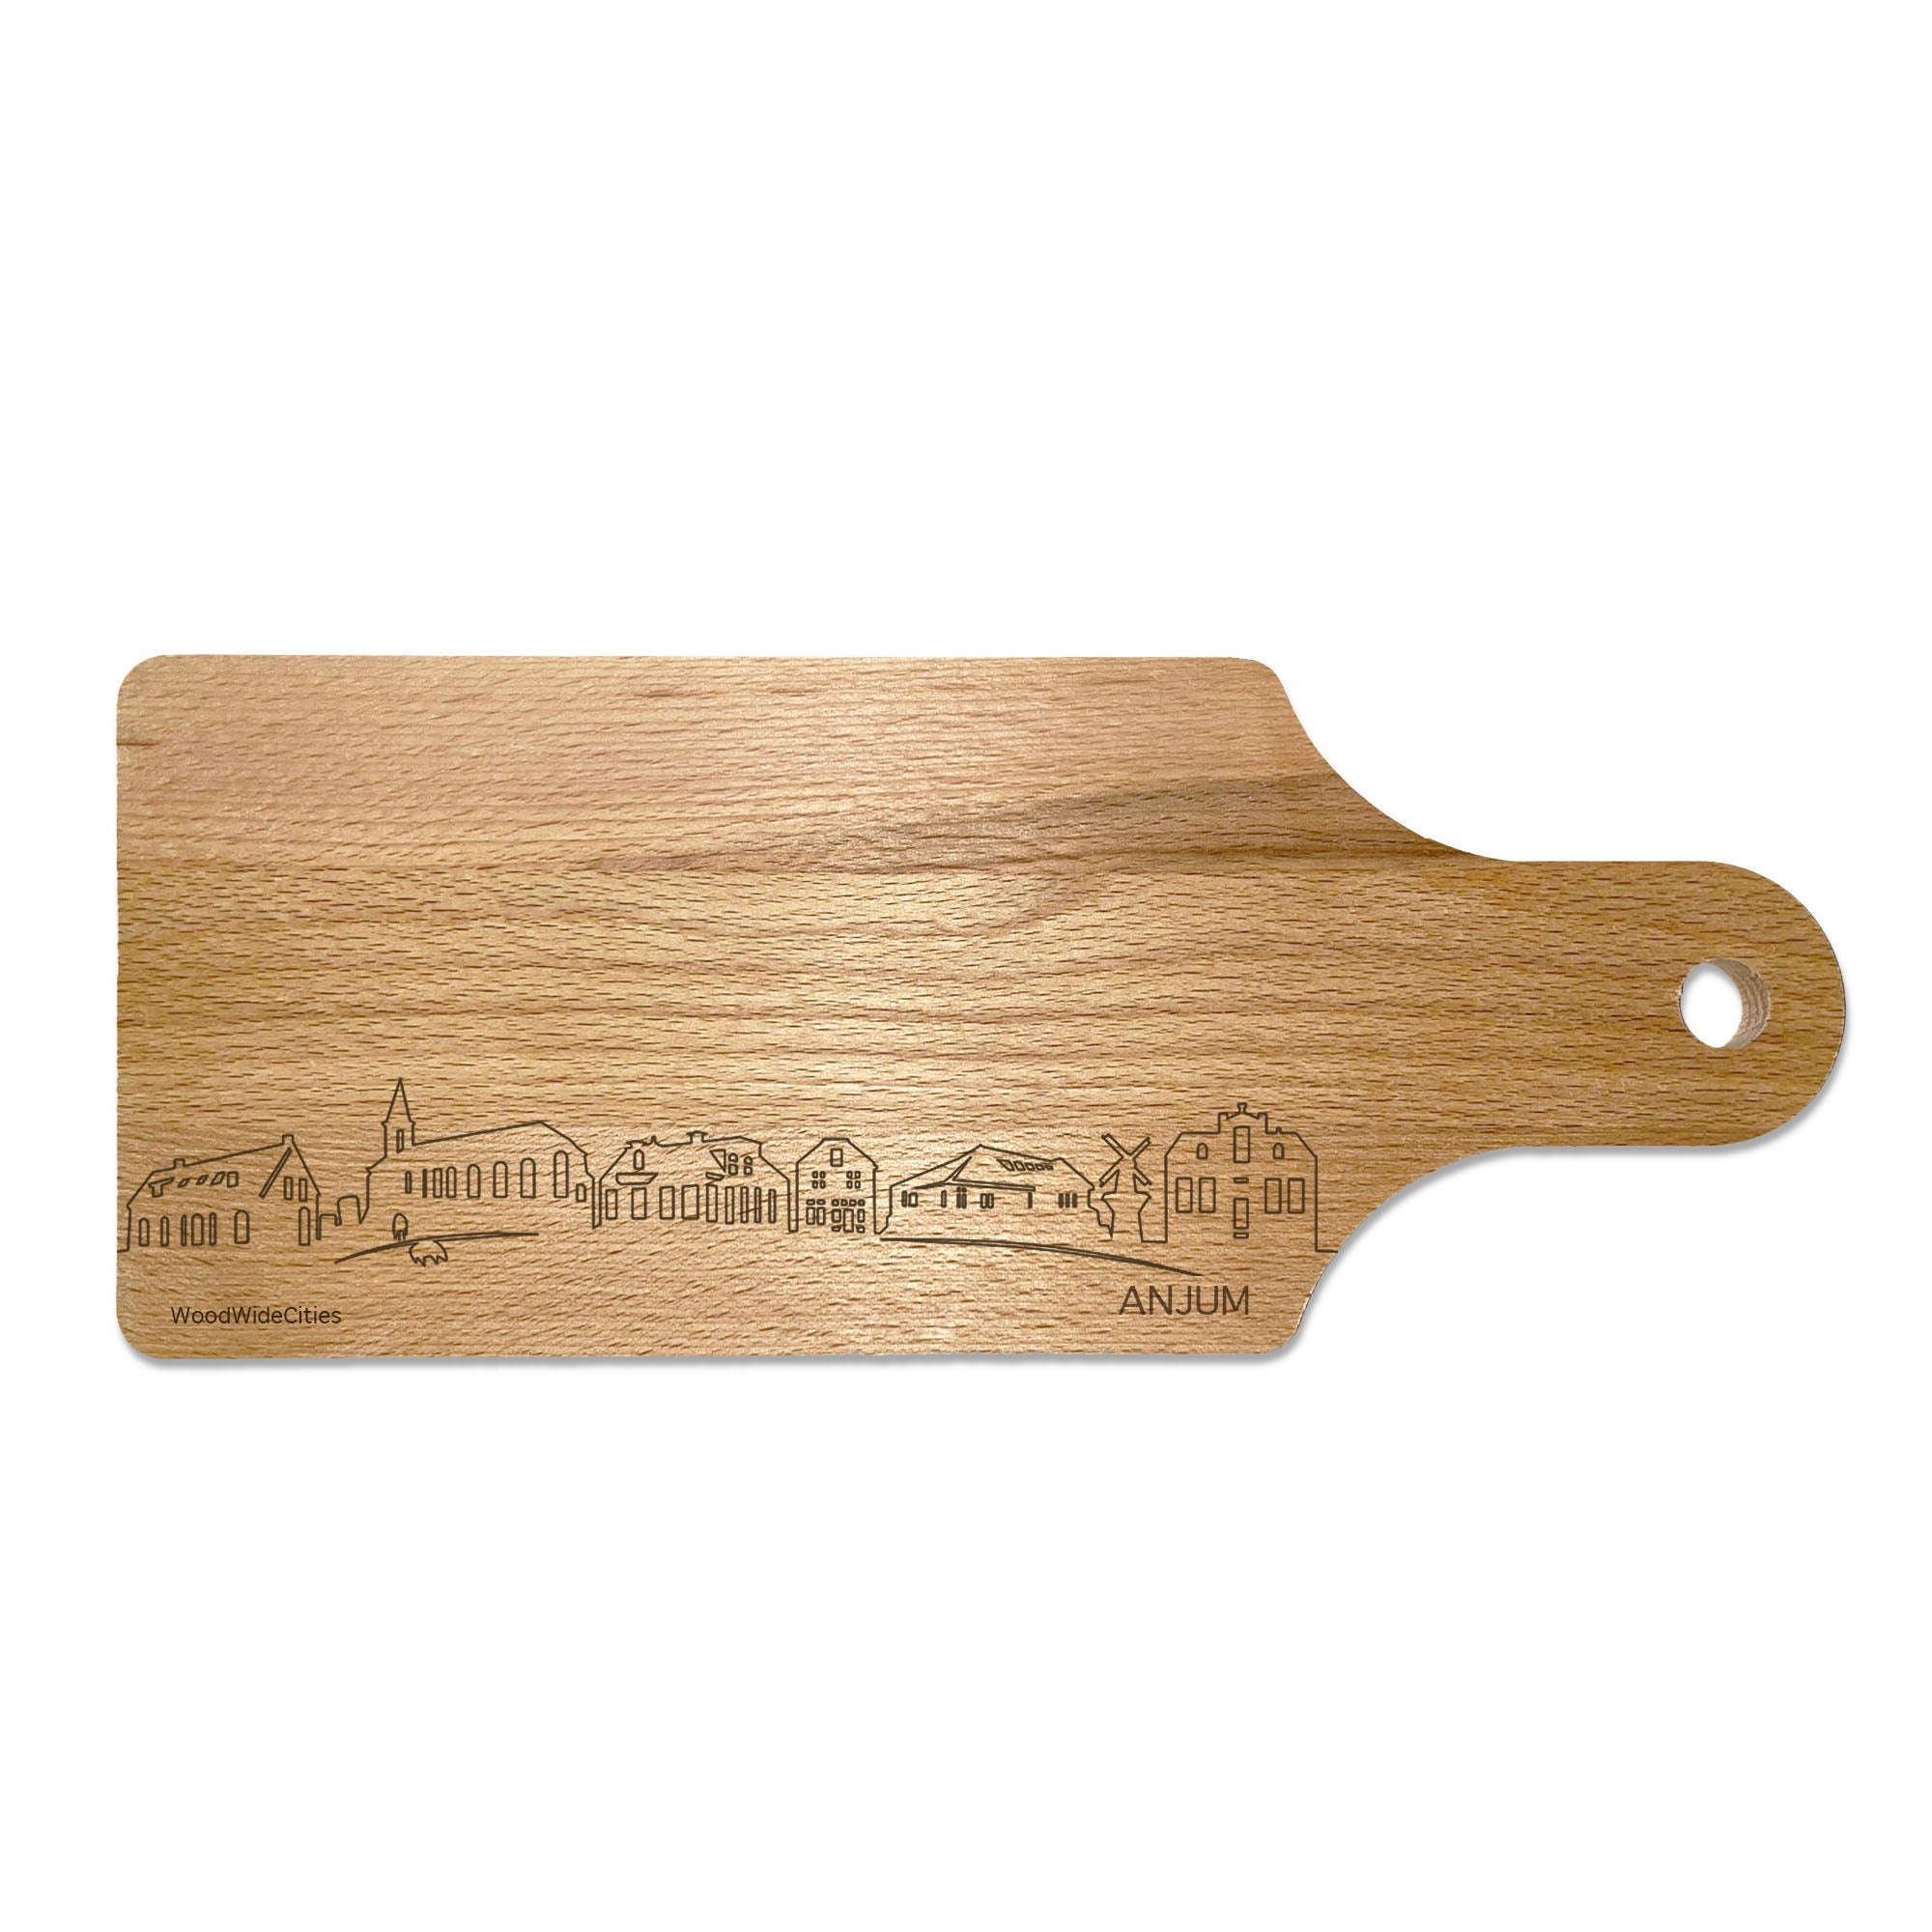 Skyline Borrelplank Anjum houten cadeau decoratie relatiegeschenk van WoodWideCities